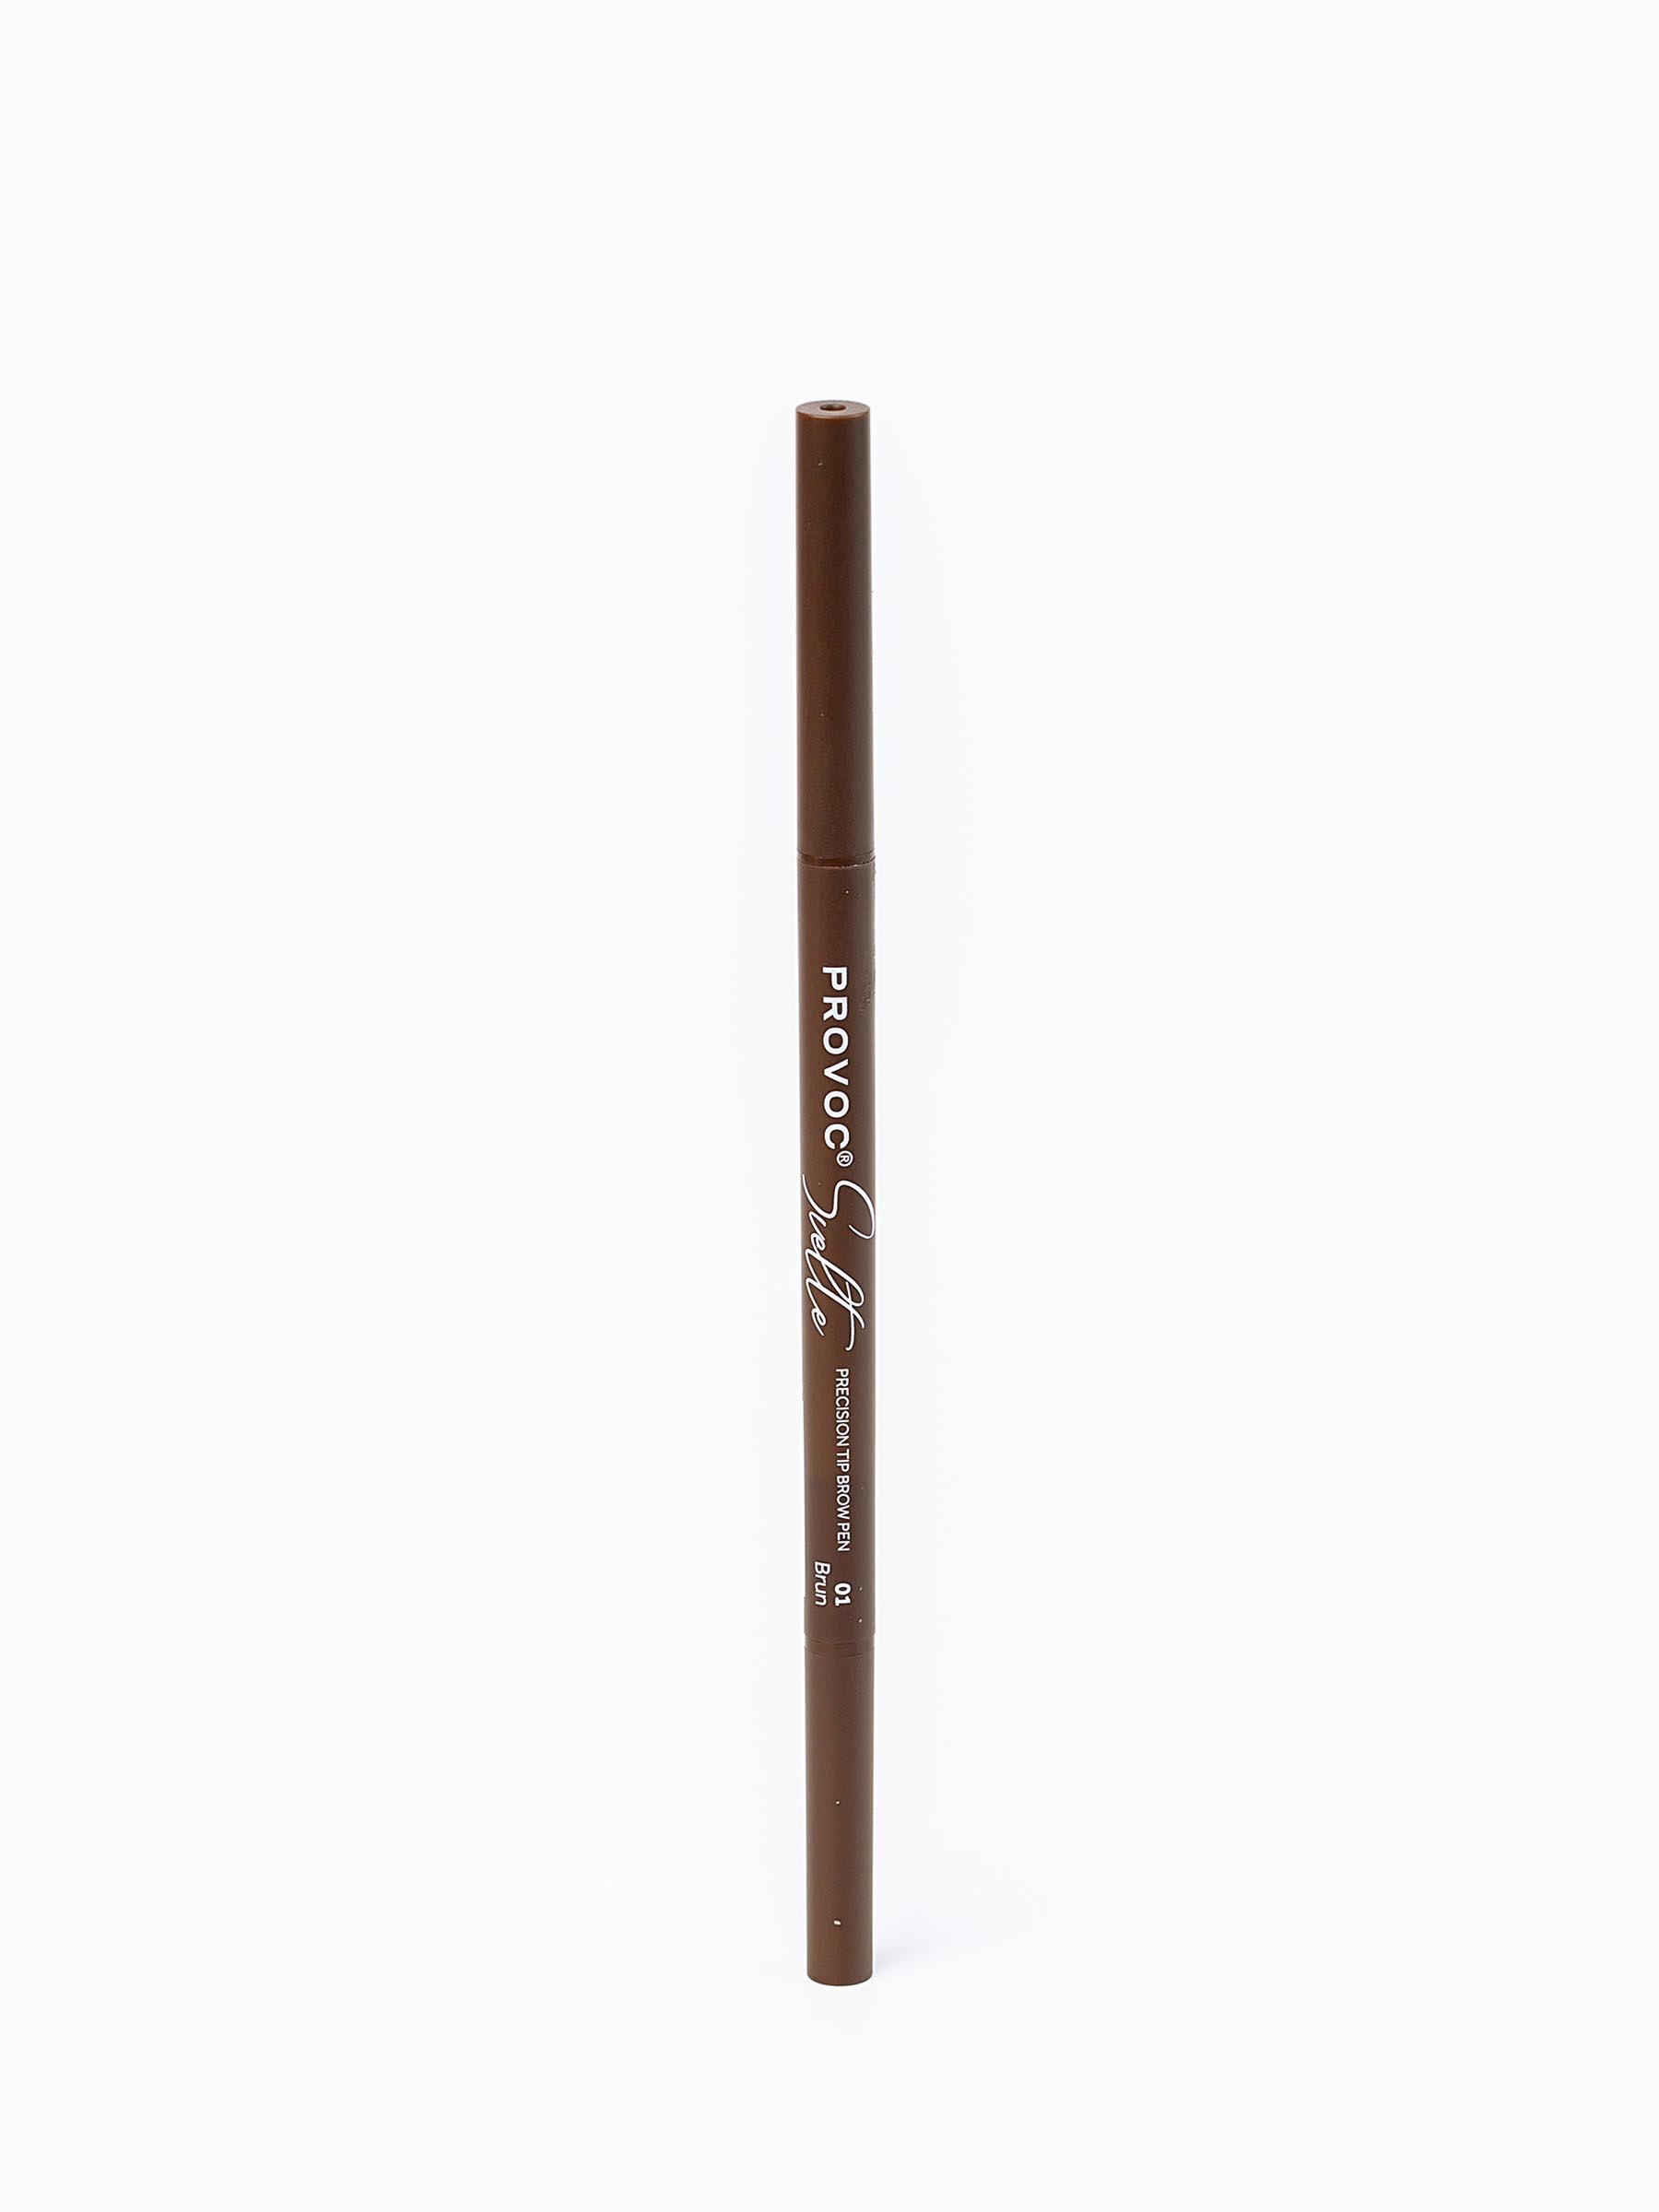 Ультратонкий карандаш для бровей Sawaya International LLC 01 коричневый карандаш для бровей make up factory автоматический тон 06 пепельный коричневый 0 09 г